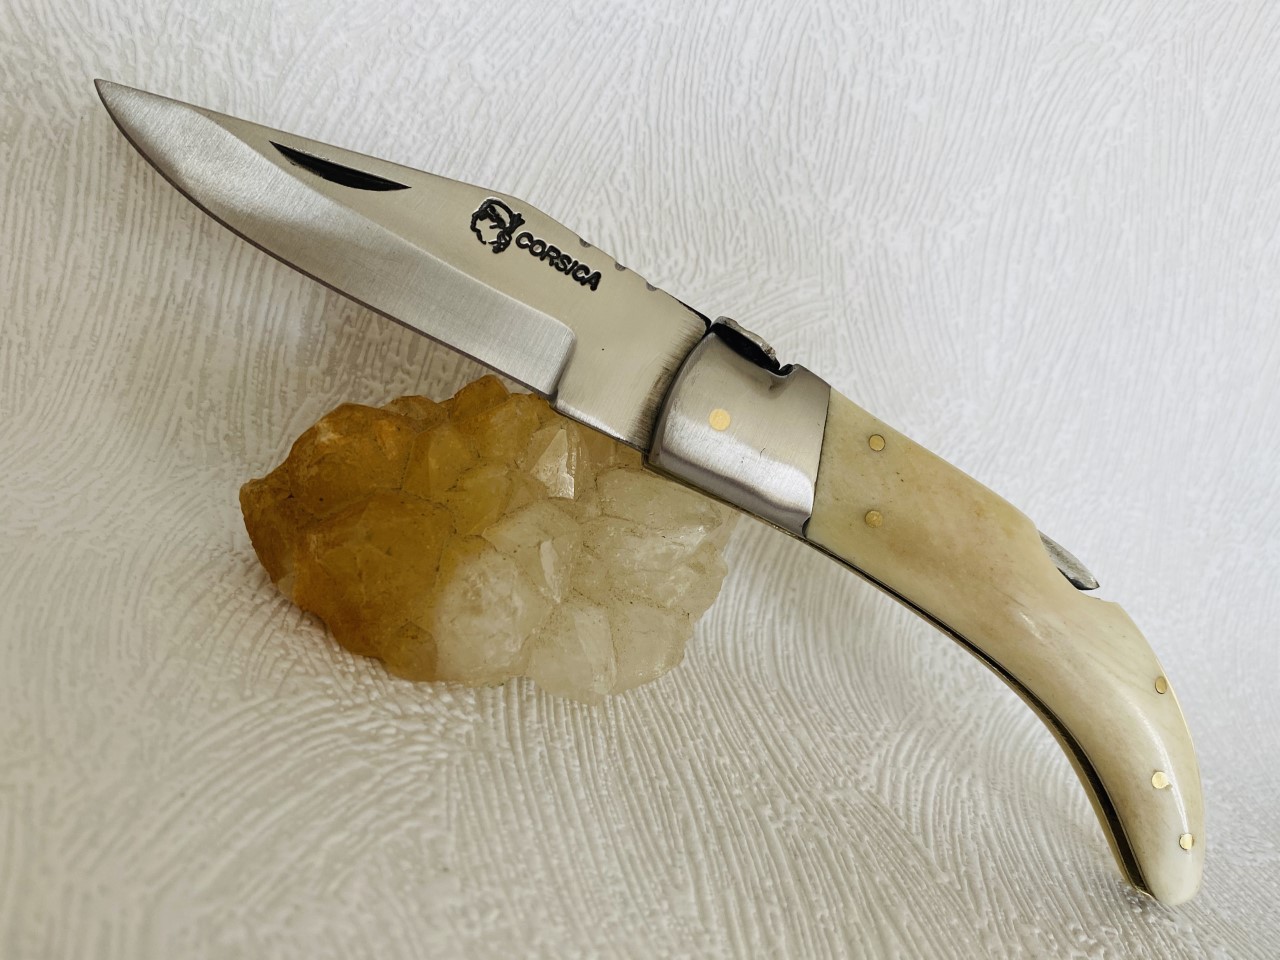 Couteau de poche Berger pittuda au prix de 18,90 euros .